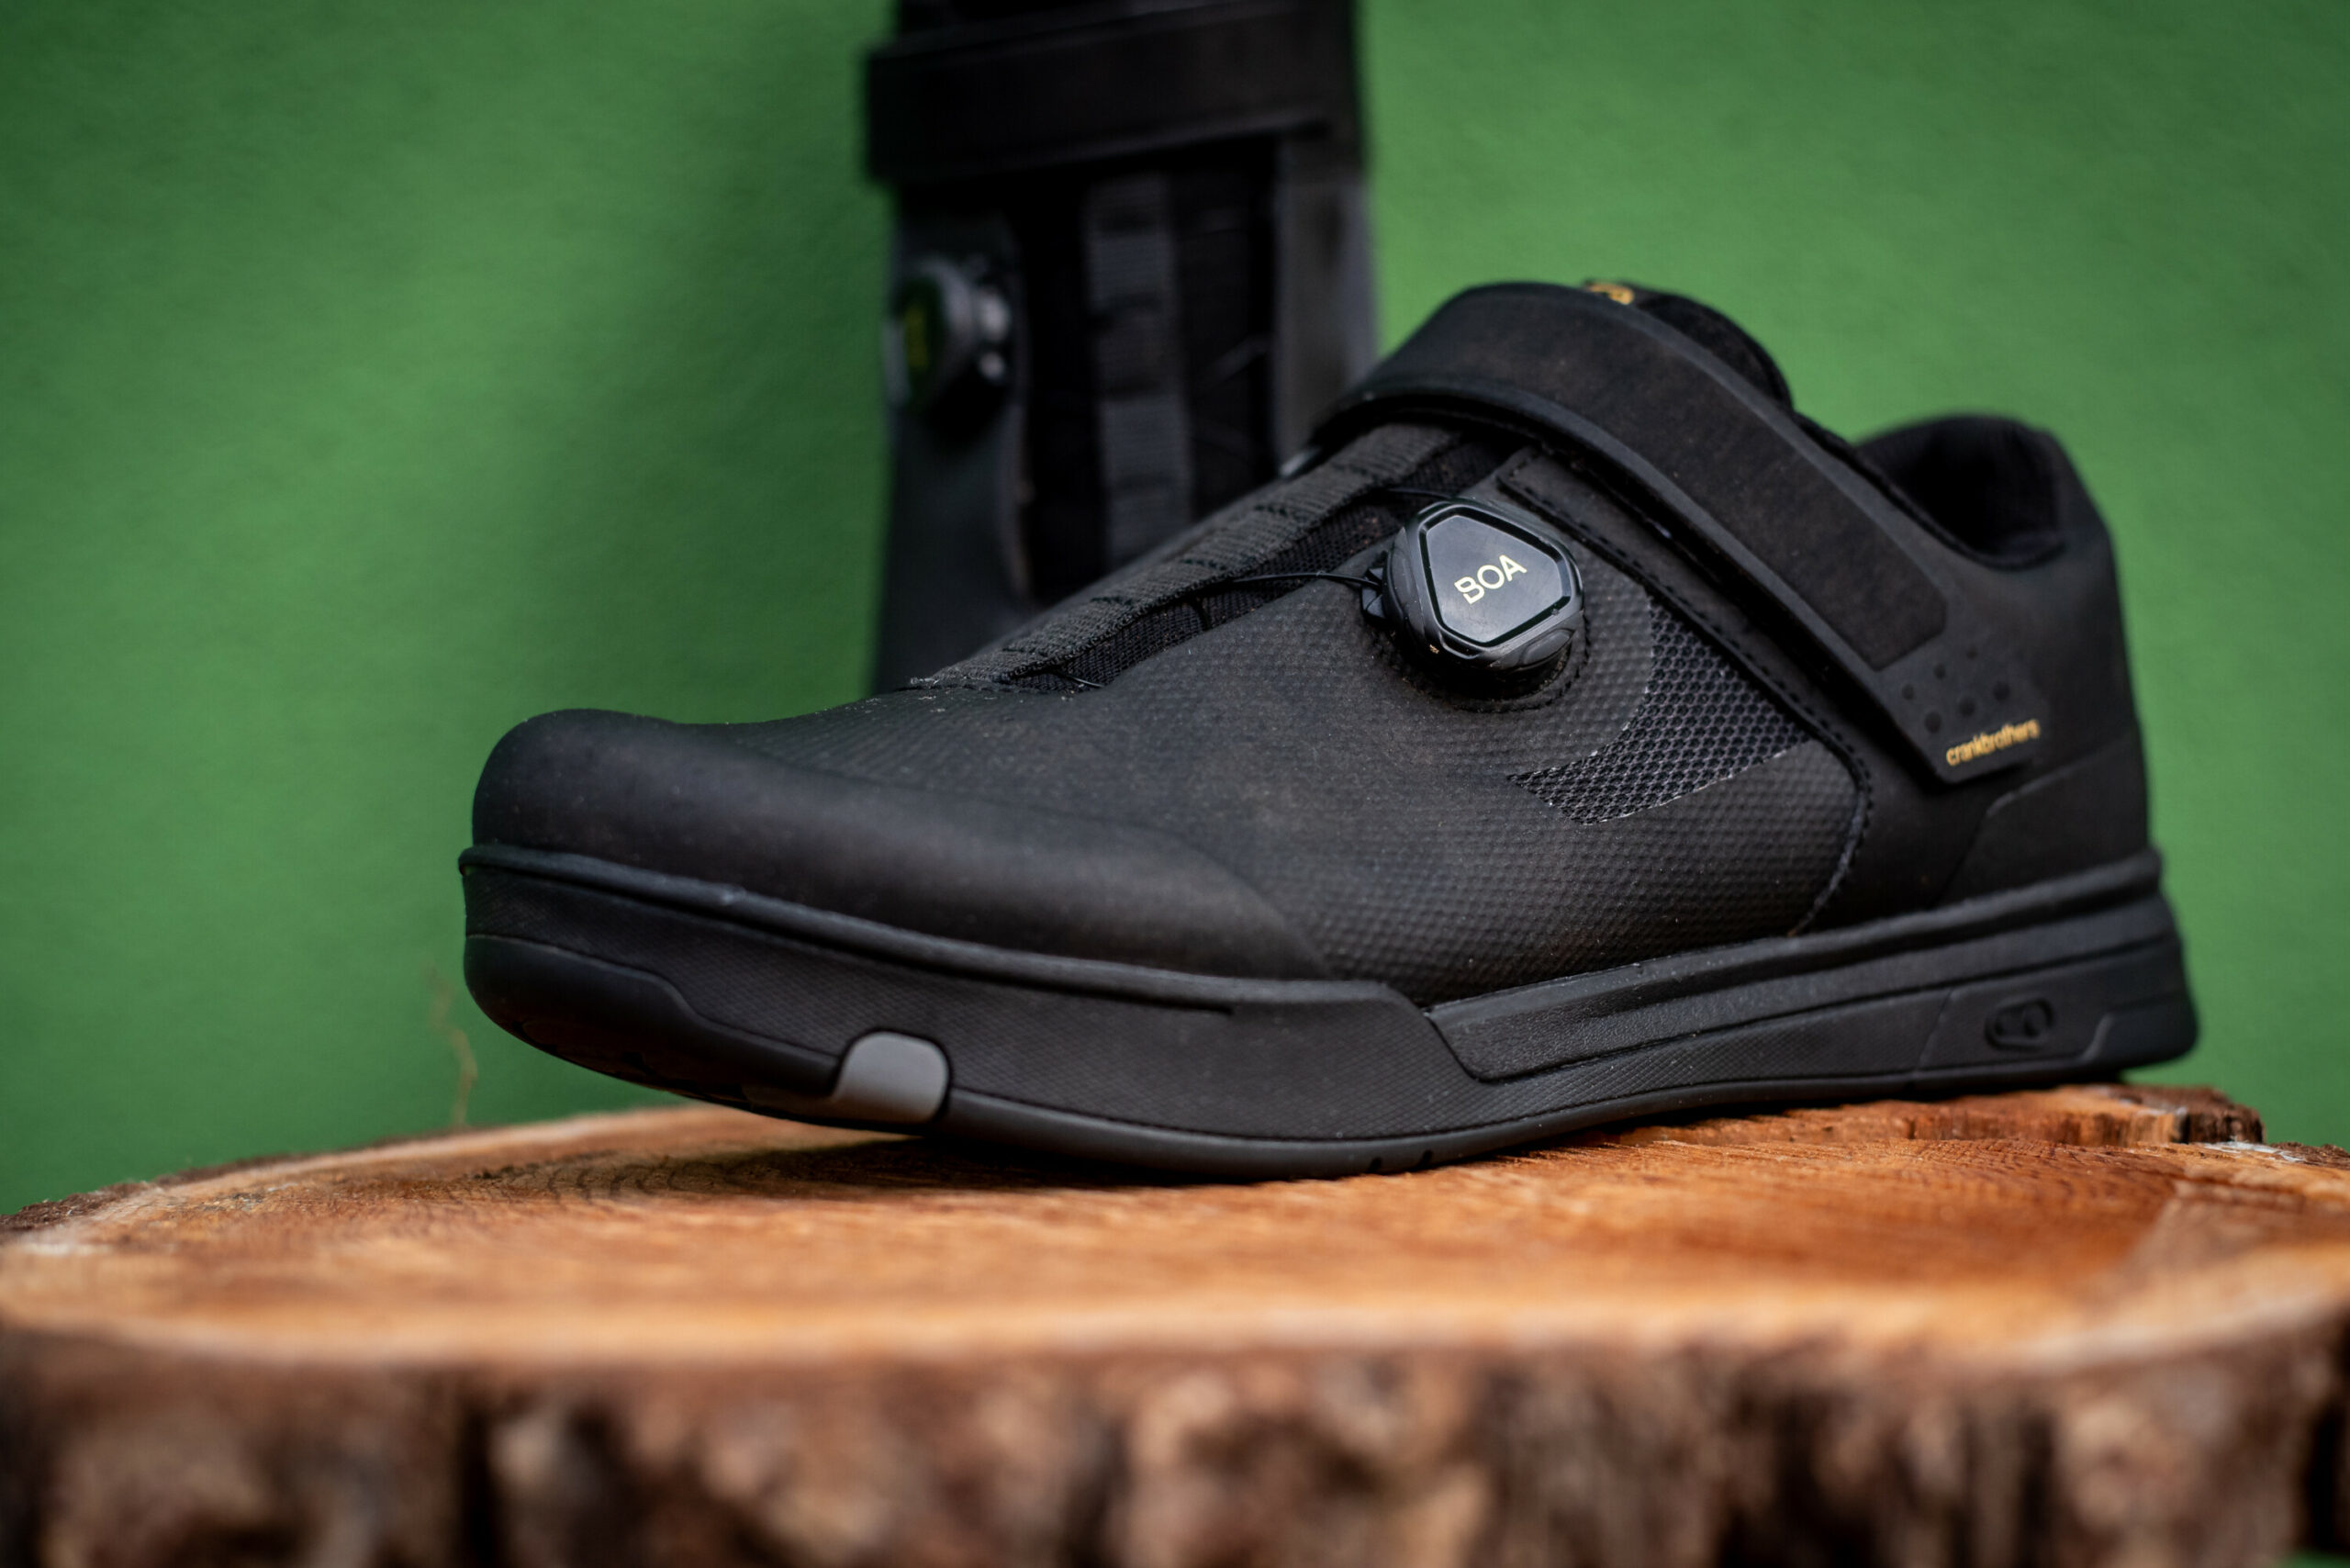 Crankbrothers Mallet MTB-Schuhe im Test: Viel Komfort für Abfahrts-Einsatz